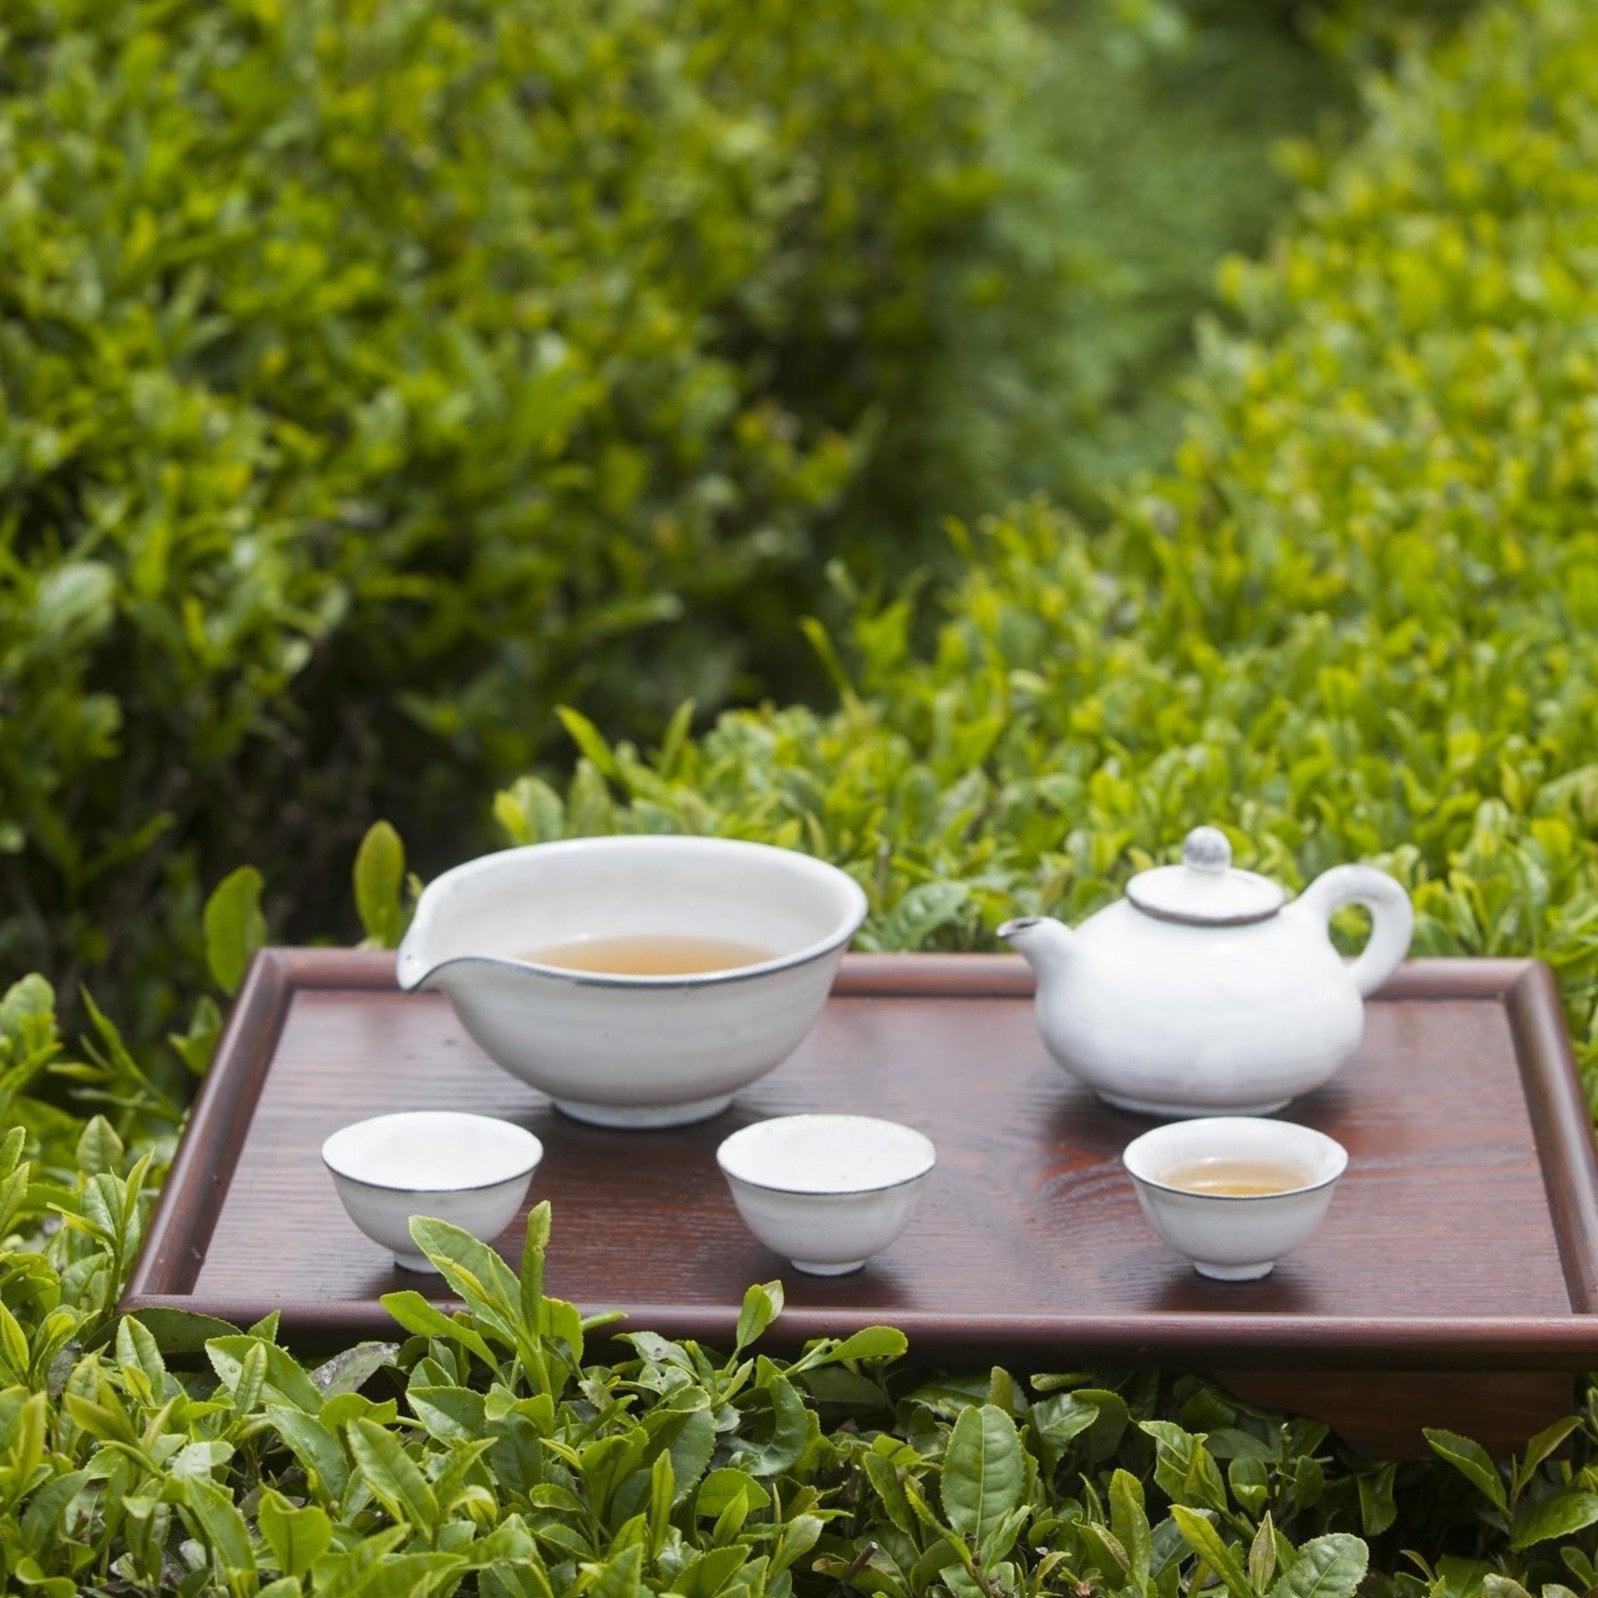 Organic Green Tea Grinbee (Gokwoo) (Sell by 3/5/23) - Kim'C Market